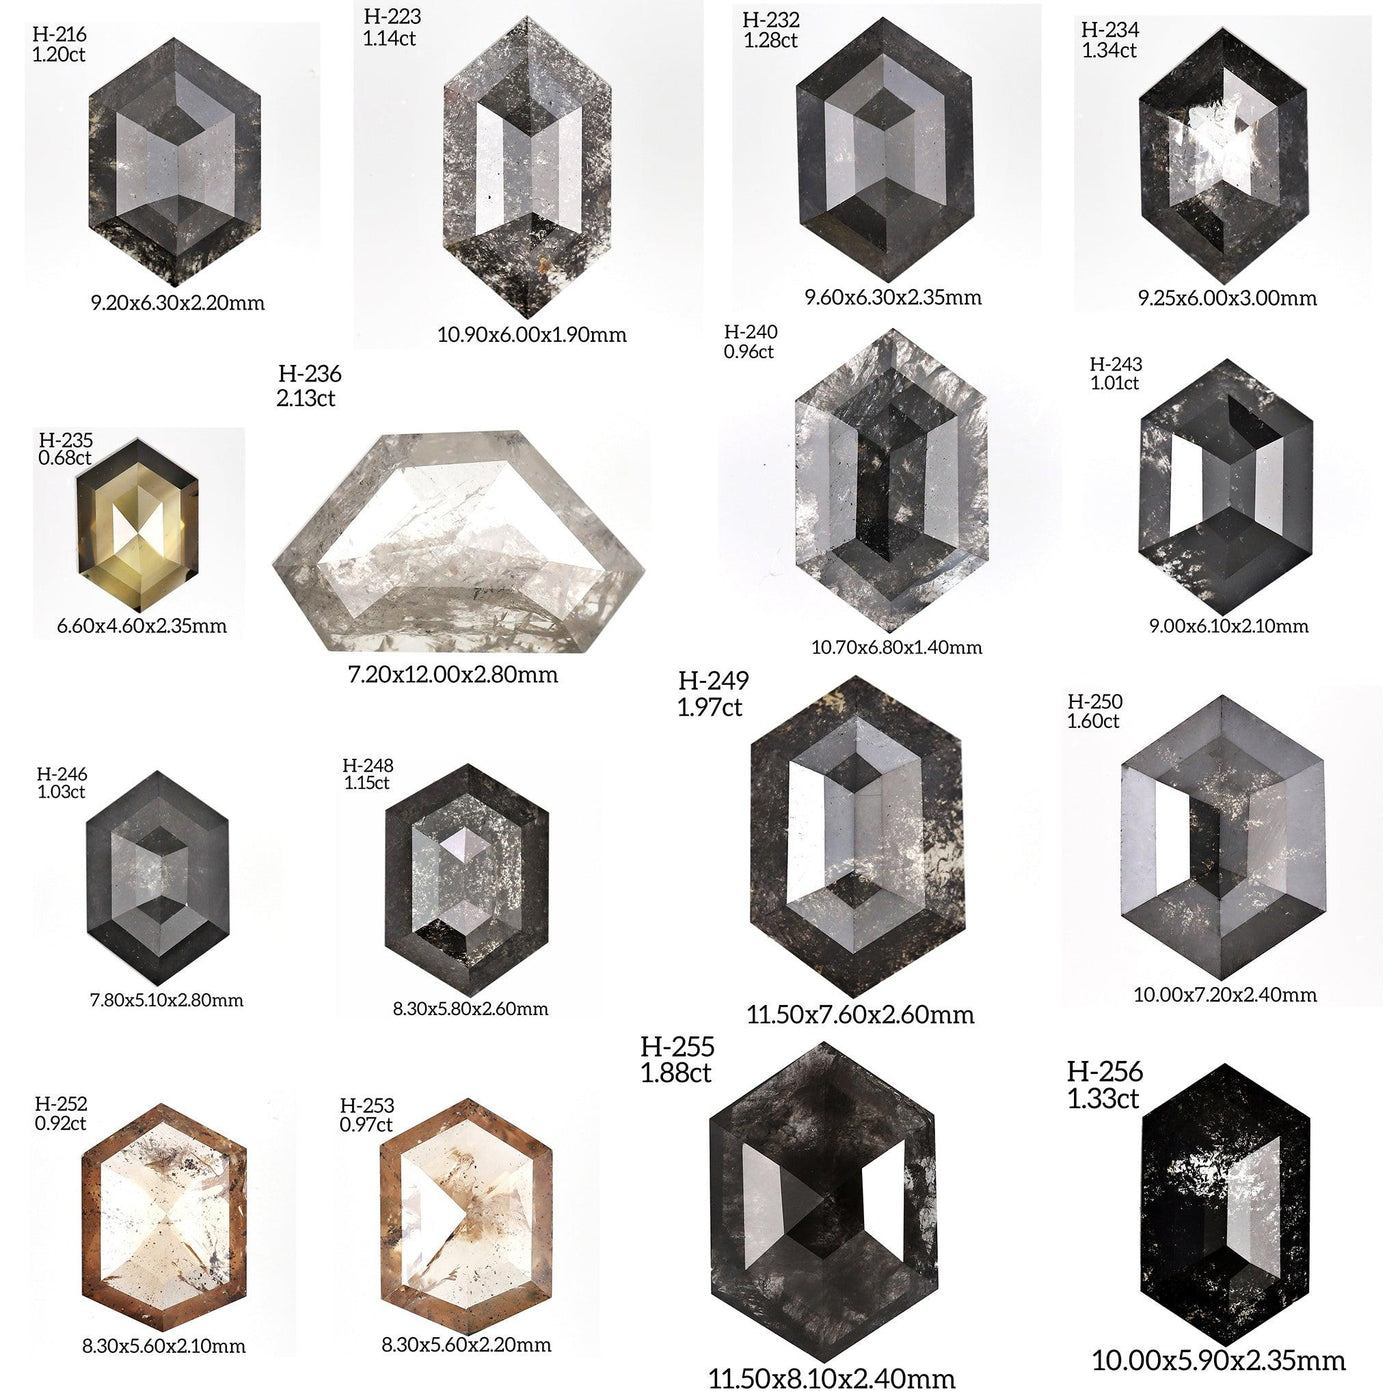 H147 - Salt and pepper hexagon diamond